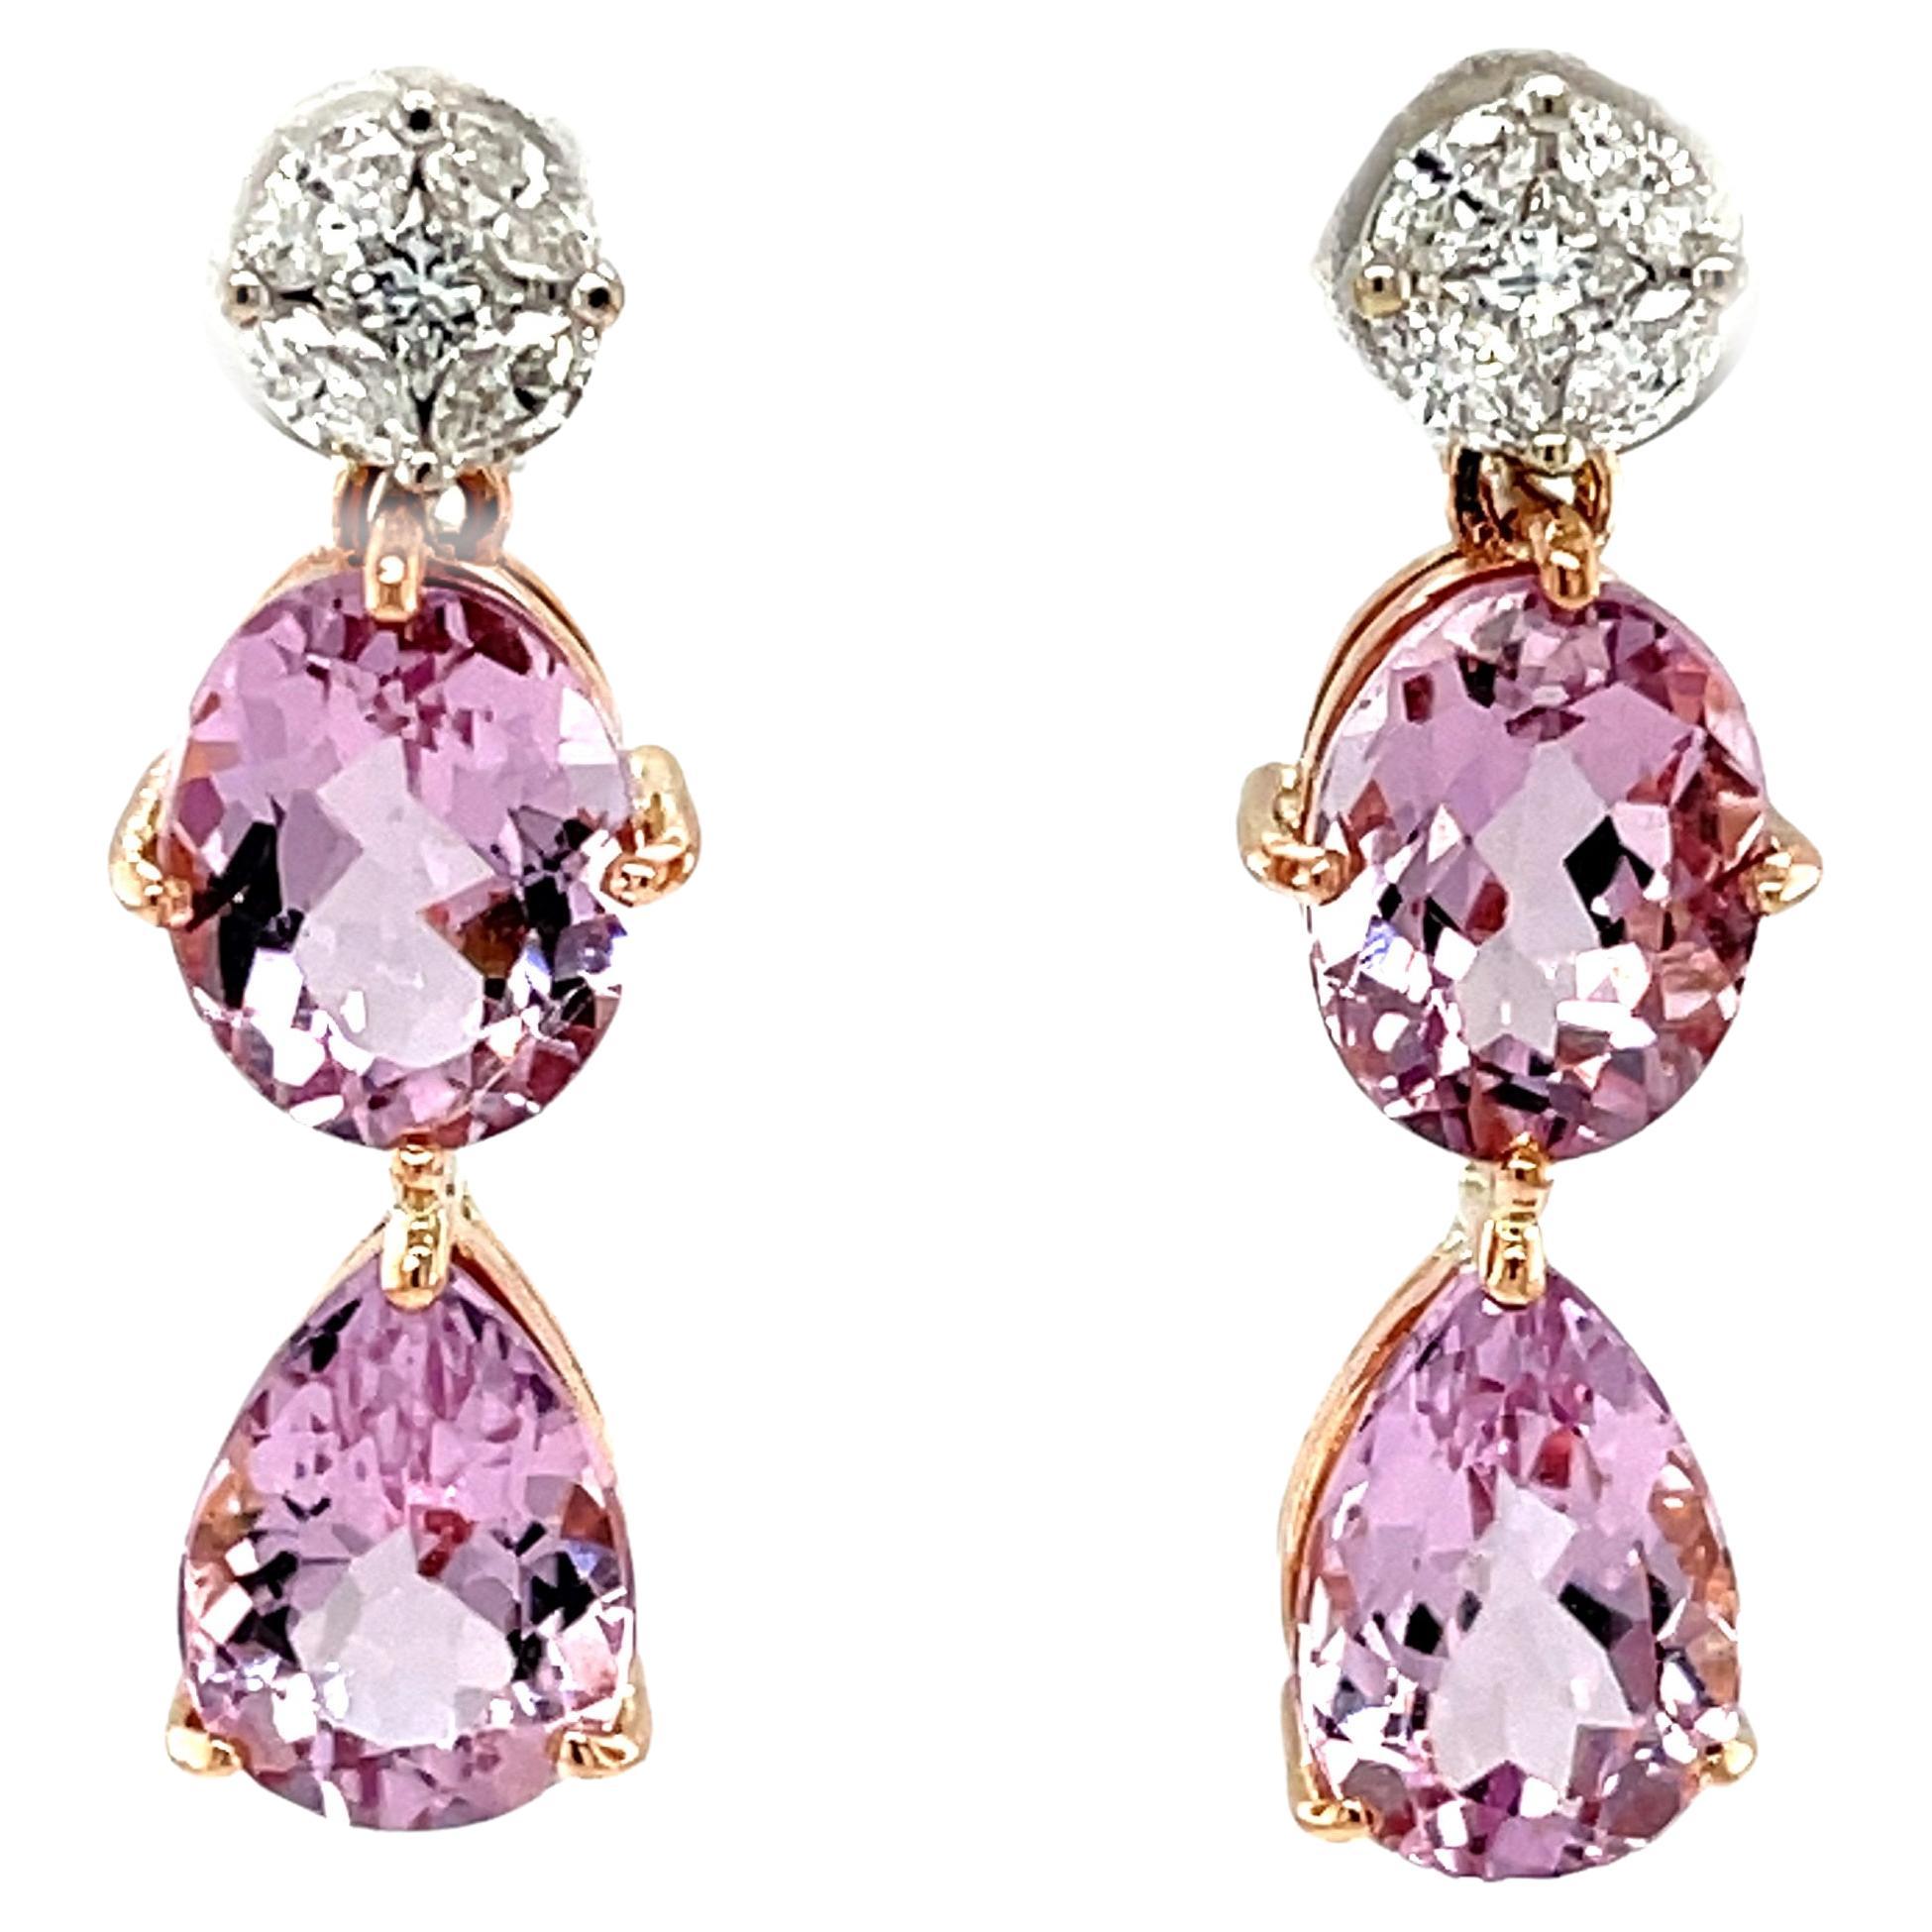 Diese wunderschönen zweifarbigen Tropfenohrringe bestehen aus über 7 Karat funkelnden rosa Morganiten in zwei Formen, die an glänzenden weißen Diamanten in 18 Karat Gold baumeln! Die perfekt aufeinander abgestimmten, kristallinen Morganite haben